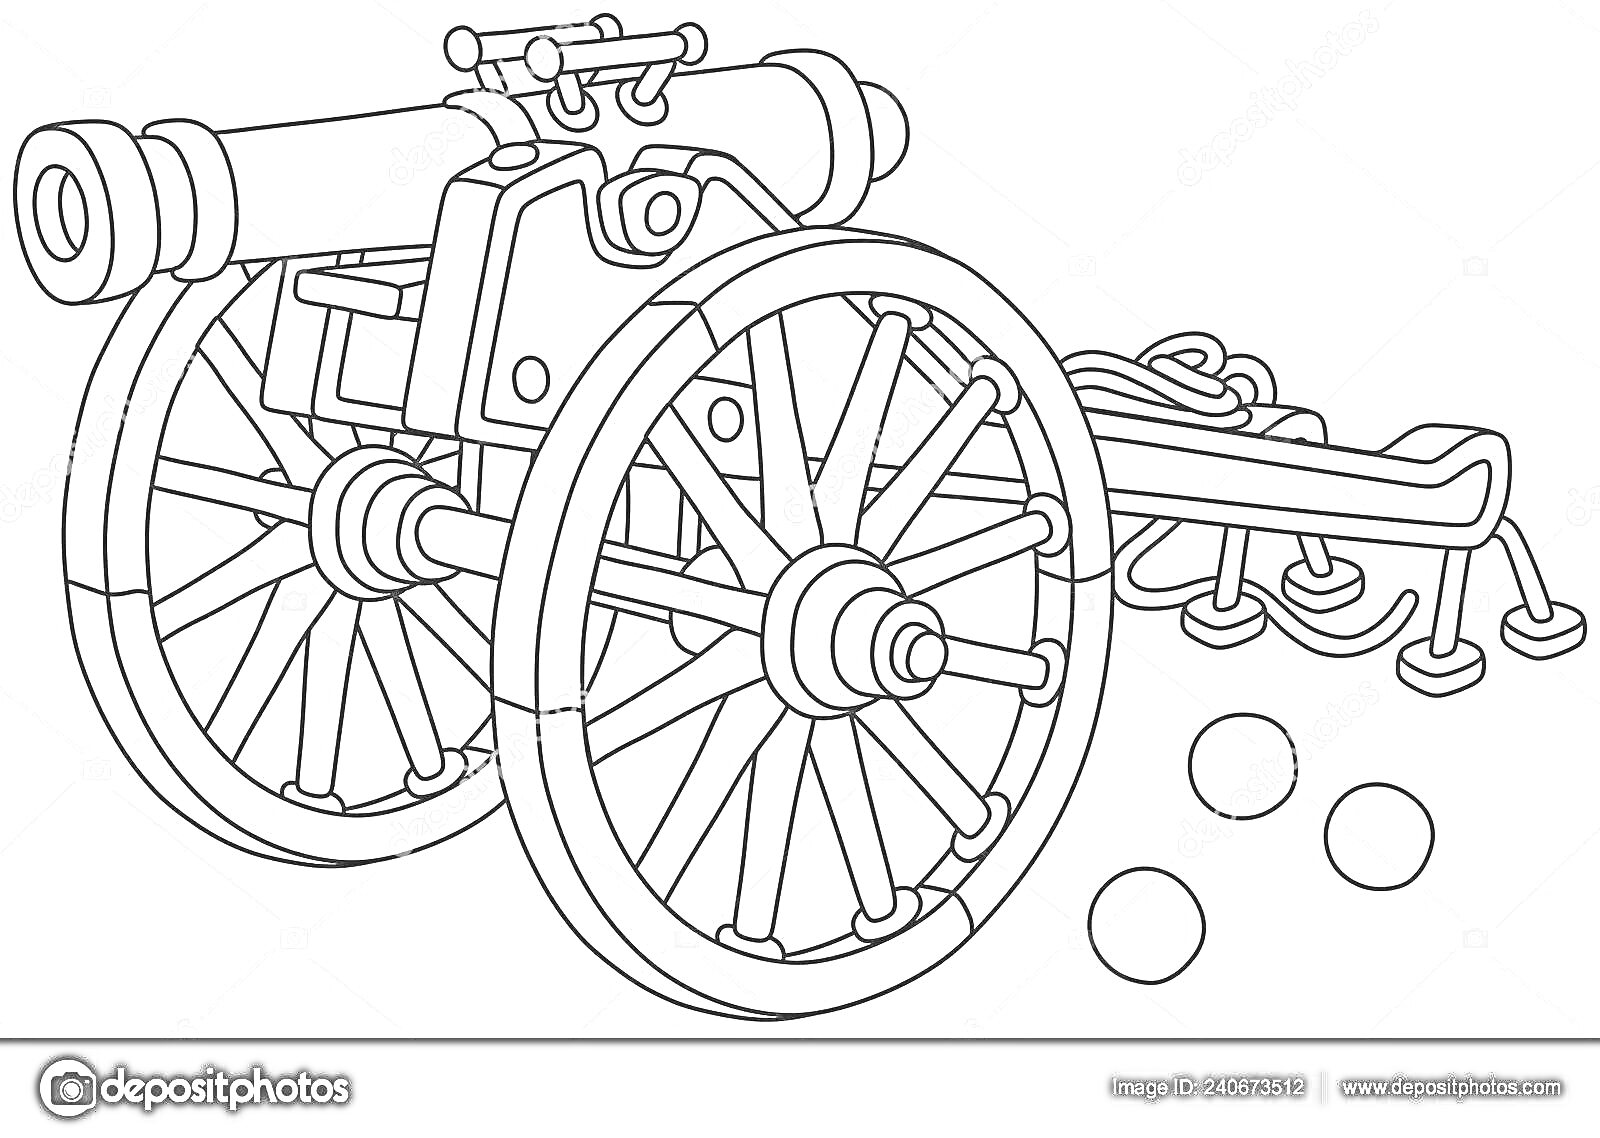 Раскраска Царь-пушка, два больших деревянных колеса, пушка на лафете, три ядра, пушечные принадлежности на заднем плане